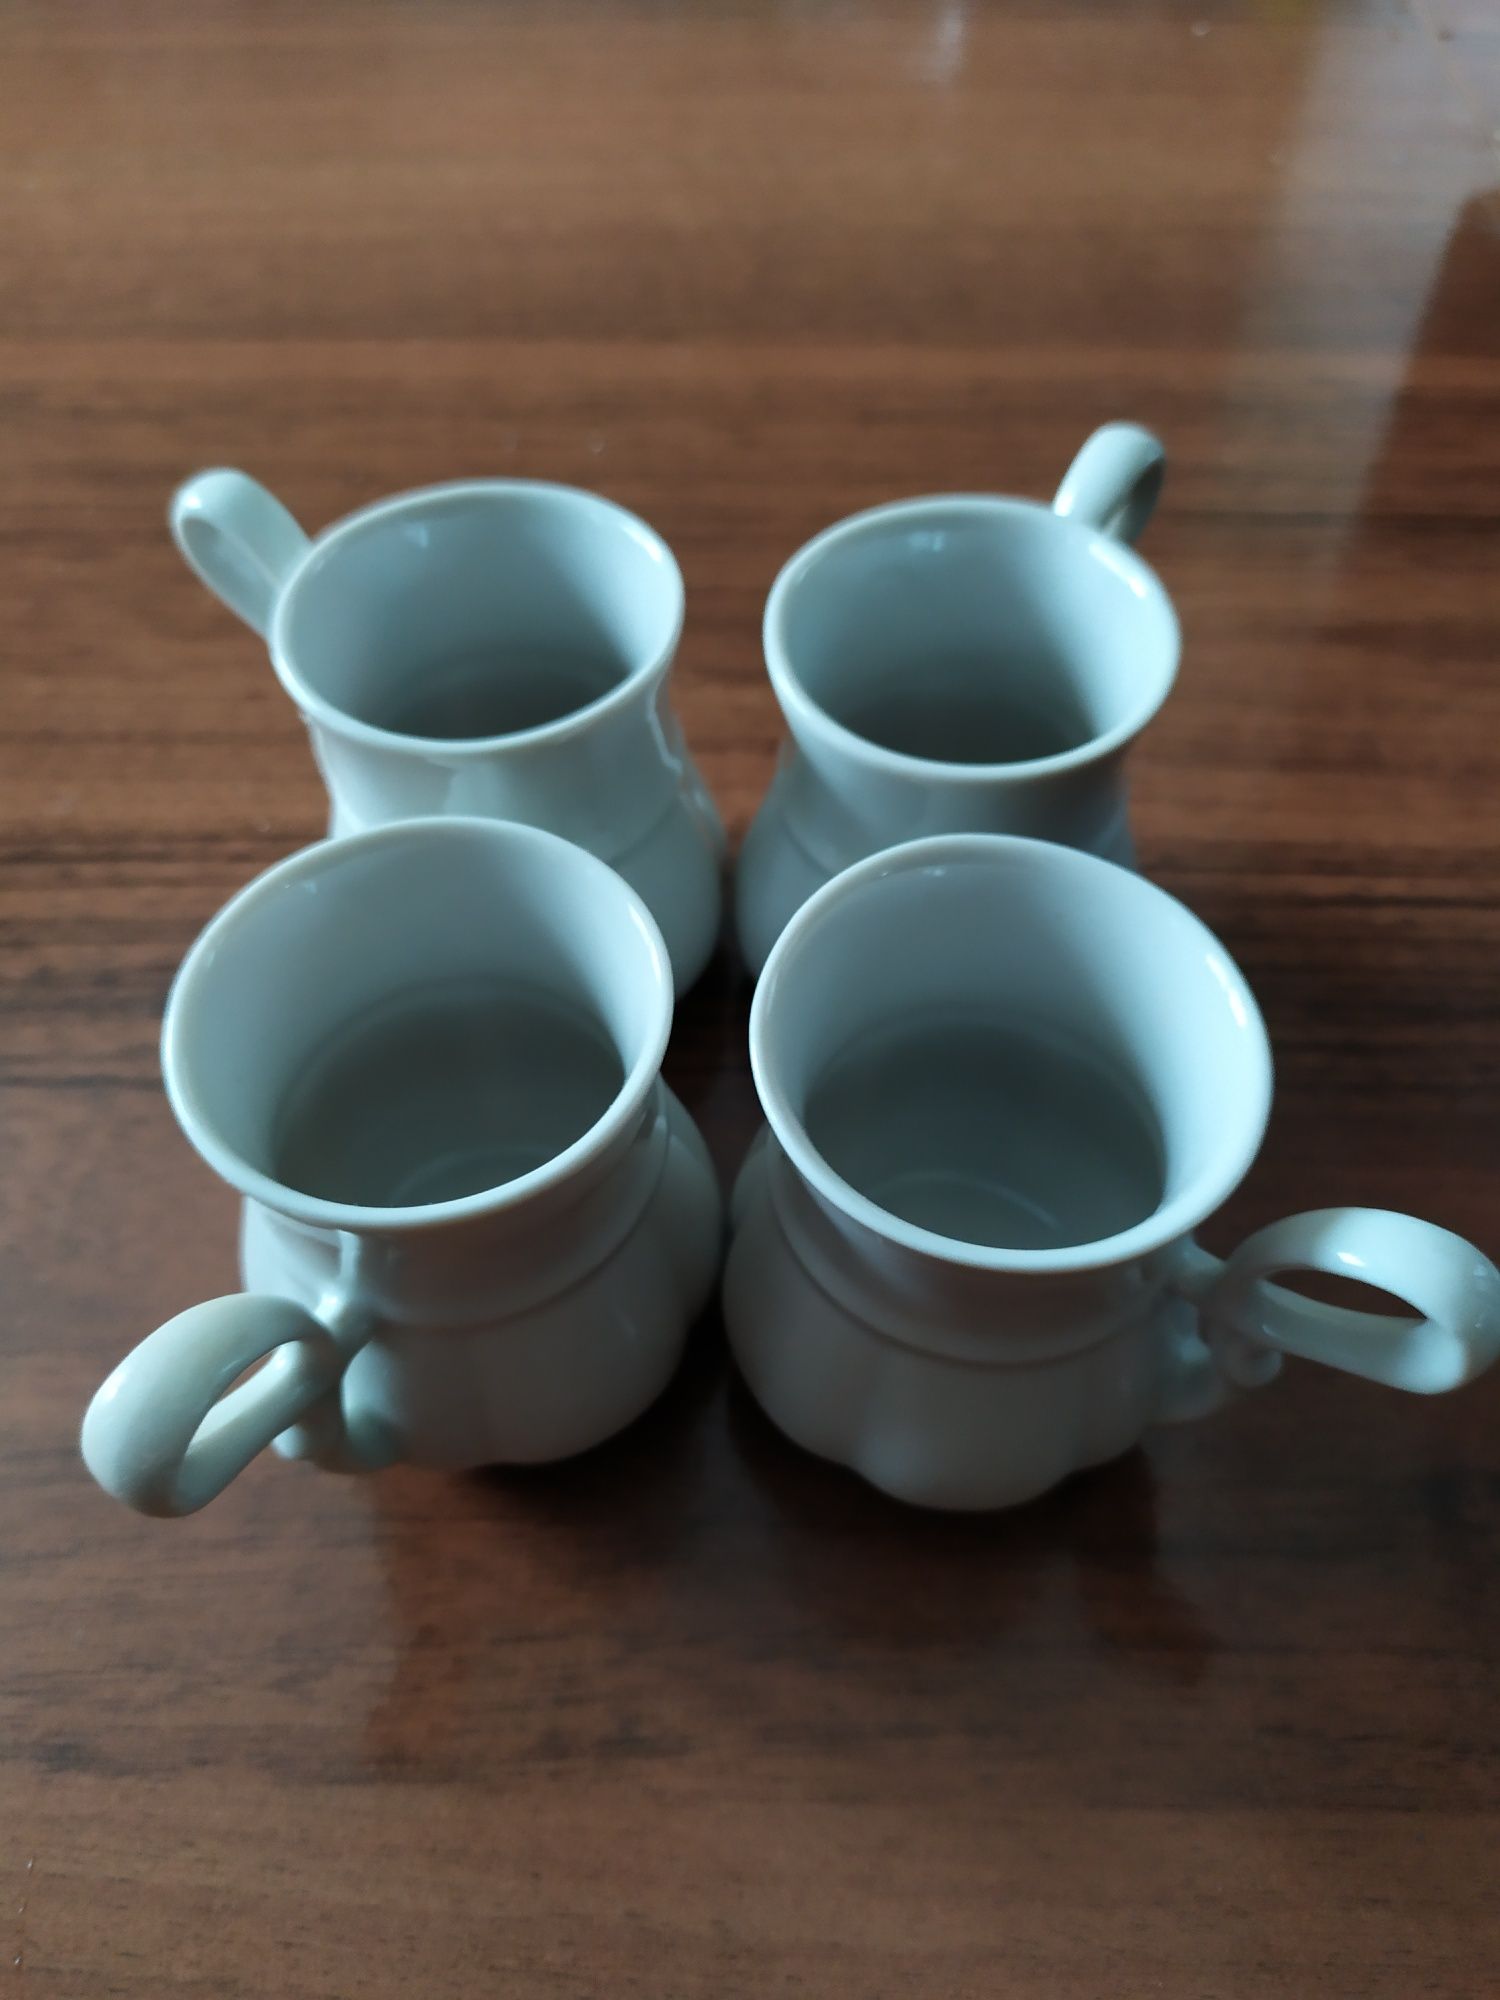 Фарфоровые чашки для кофе.